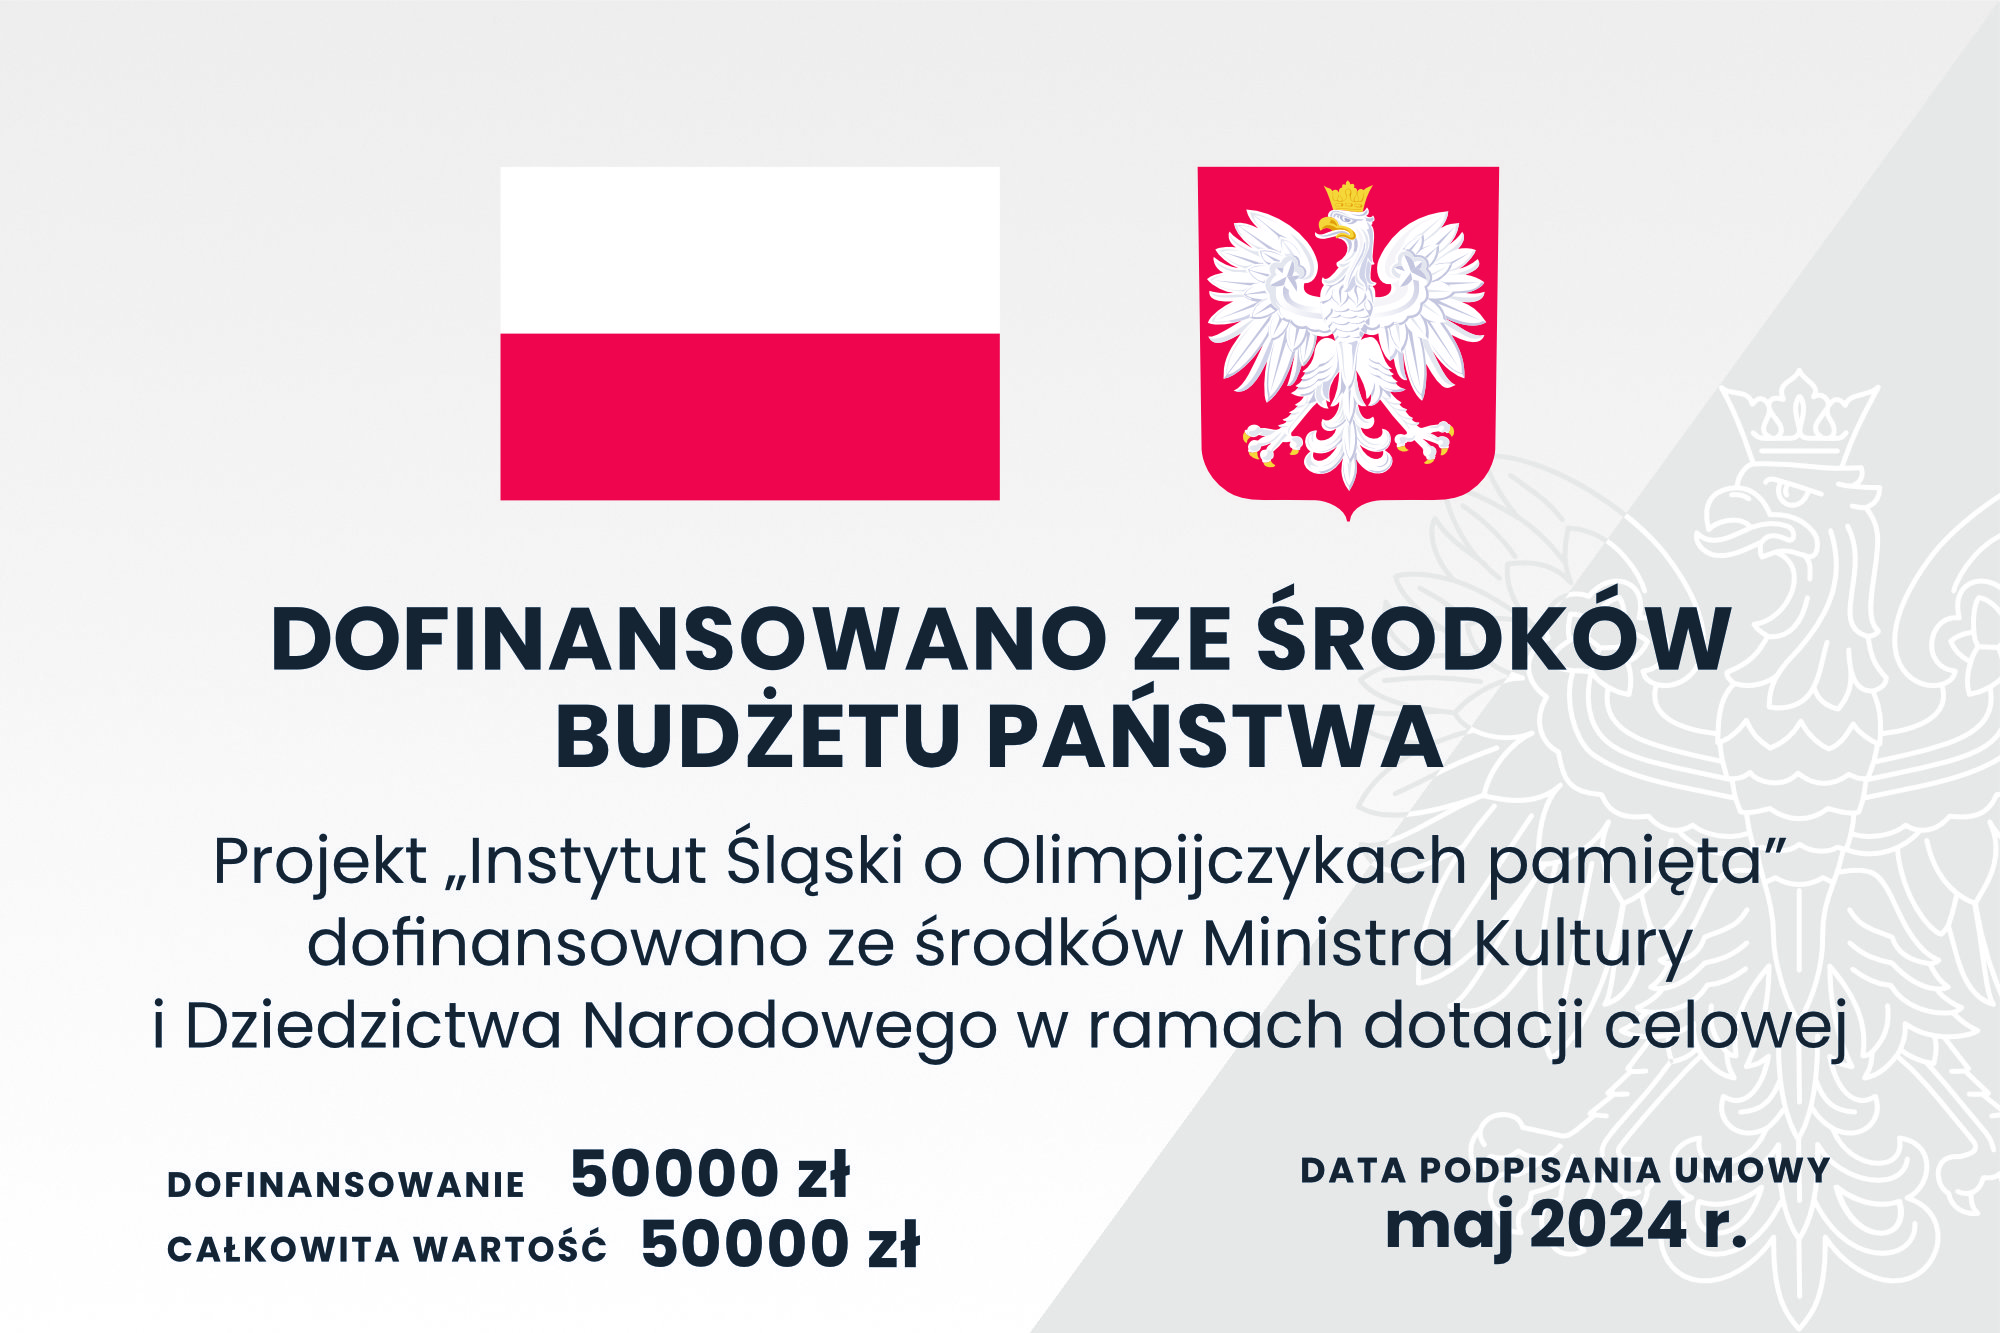 tablica informacyjna nt. dofinansowania działań edukacyjnych związanych z obchodami Roku Polskich Olimpijczyków